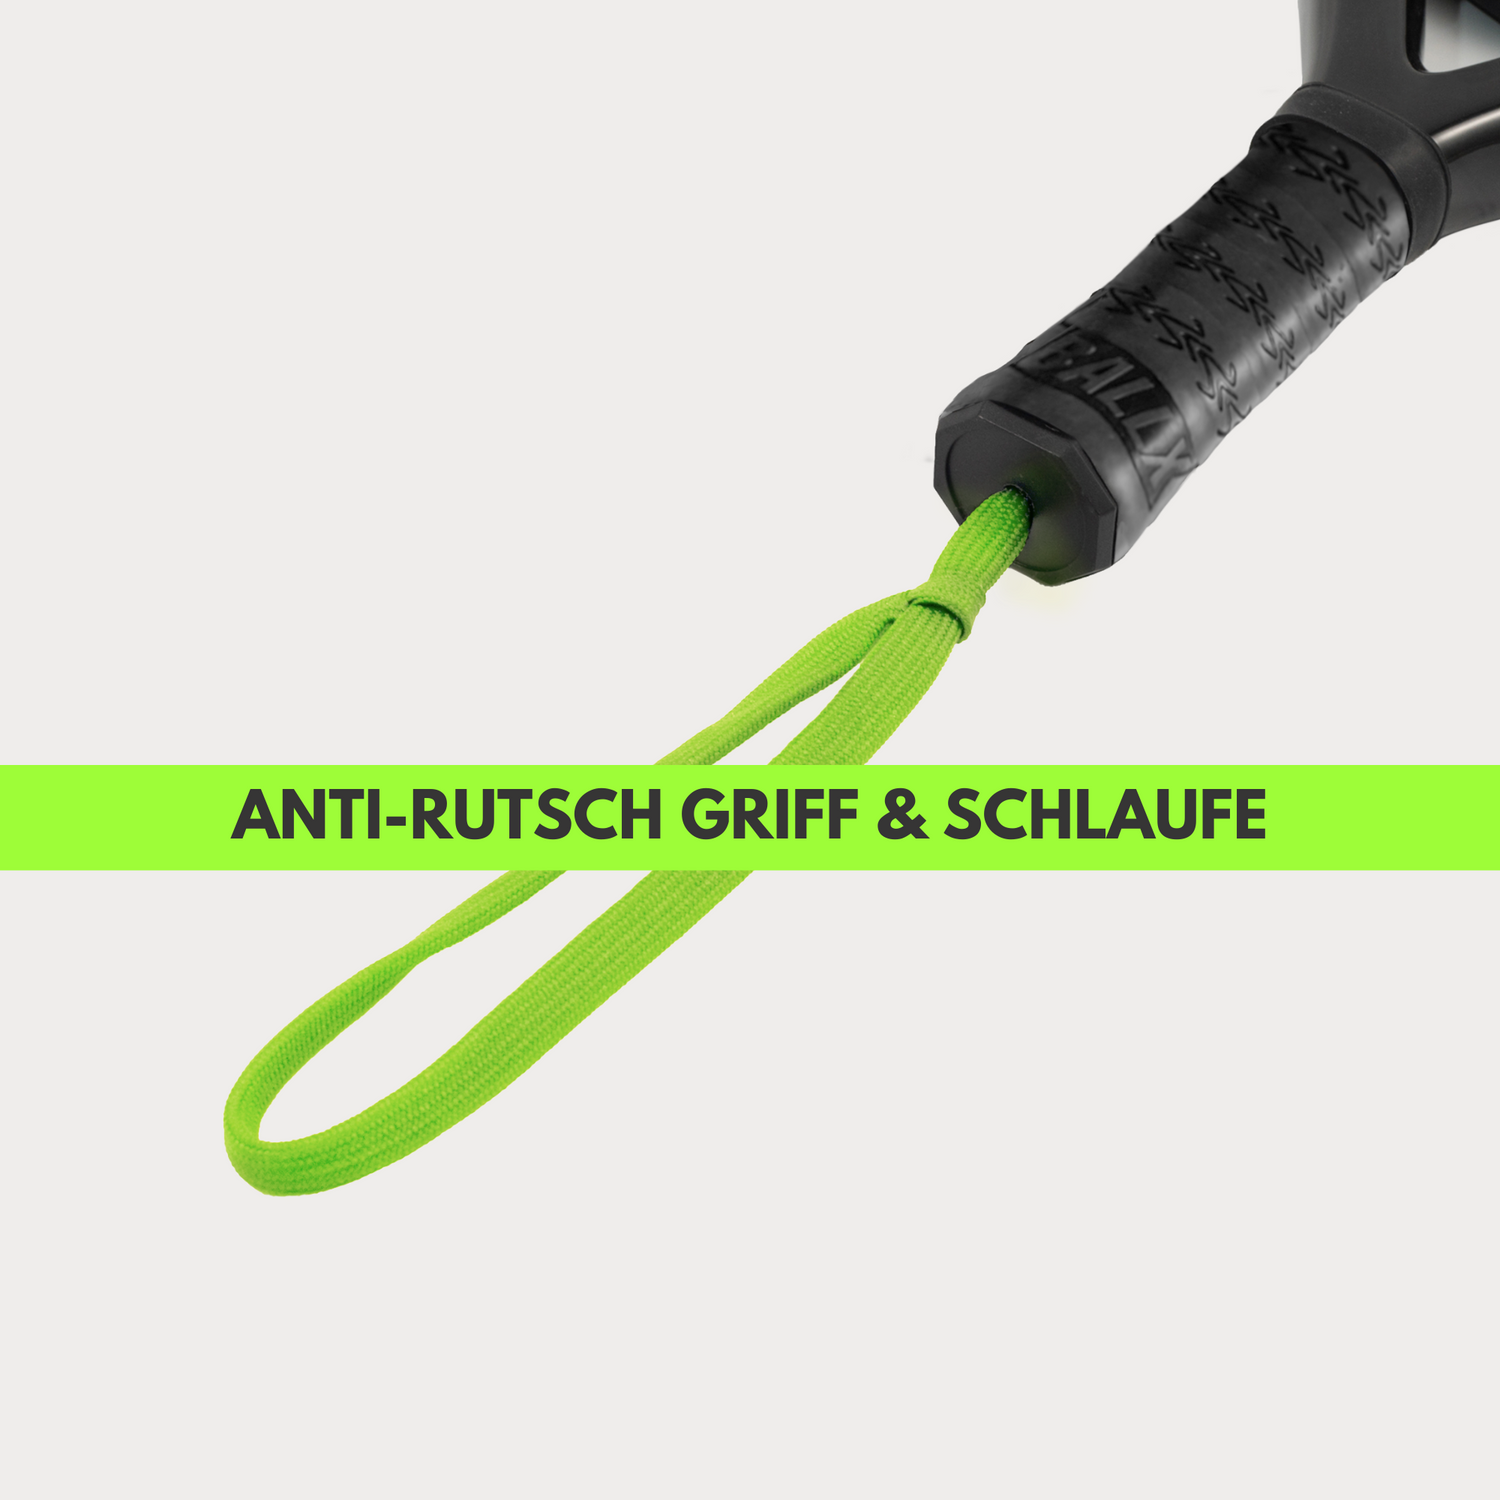 Anti-Rutsch Griff